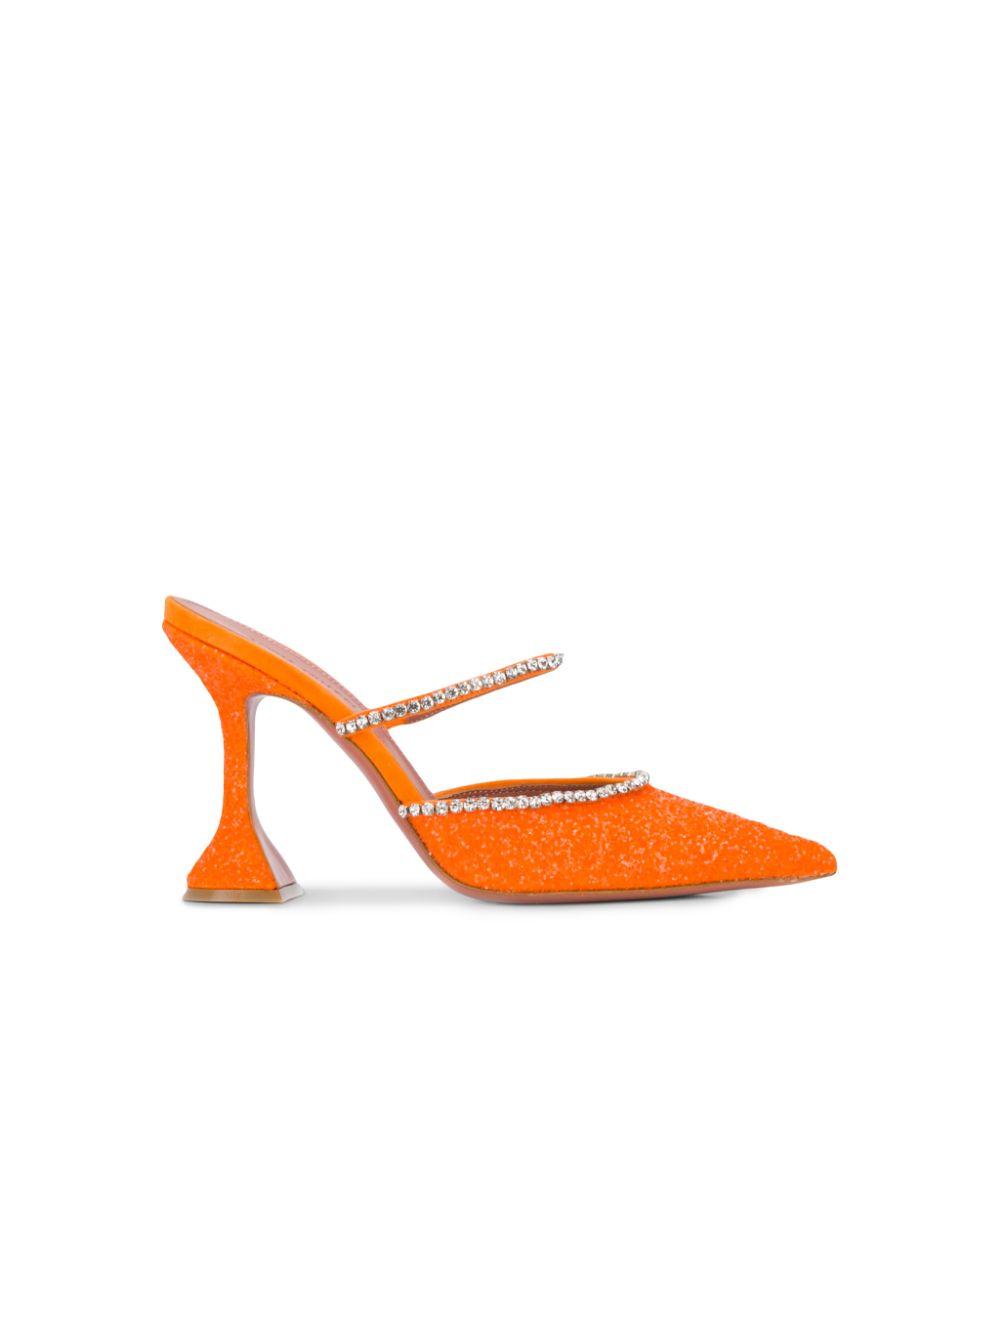 AMINA MUADDI Suede Gilda Crystal-embellished Mules in Orange - Lyst